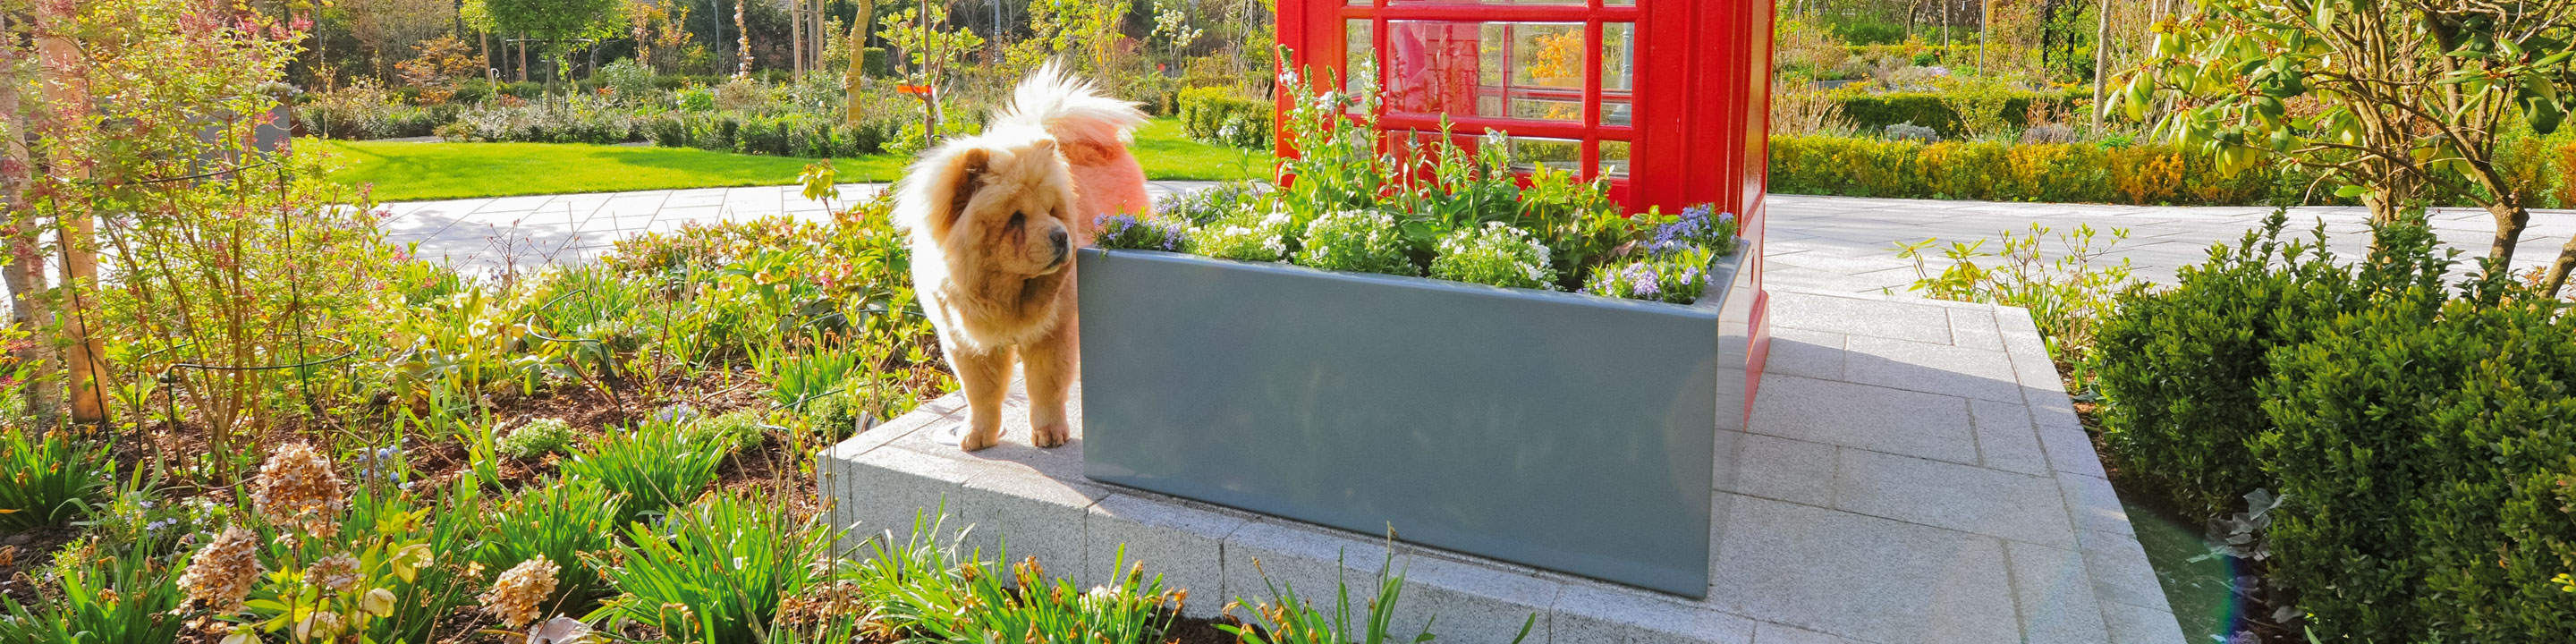 Wasserdichter Pflanzkasten Clarus ohne Fugen im Garten mit einem kleinen Hund